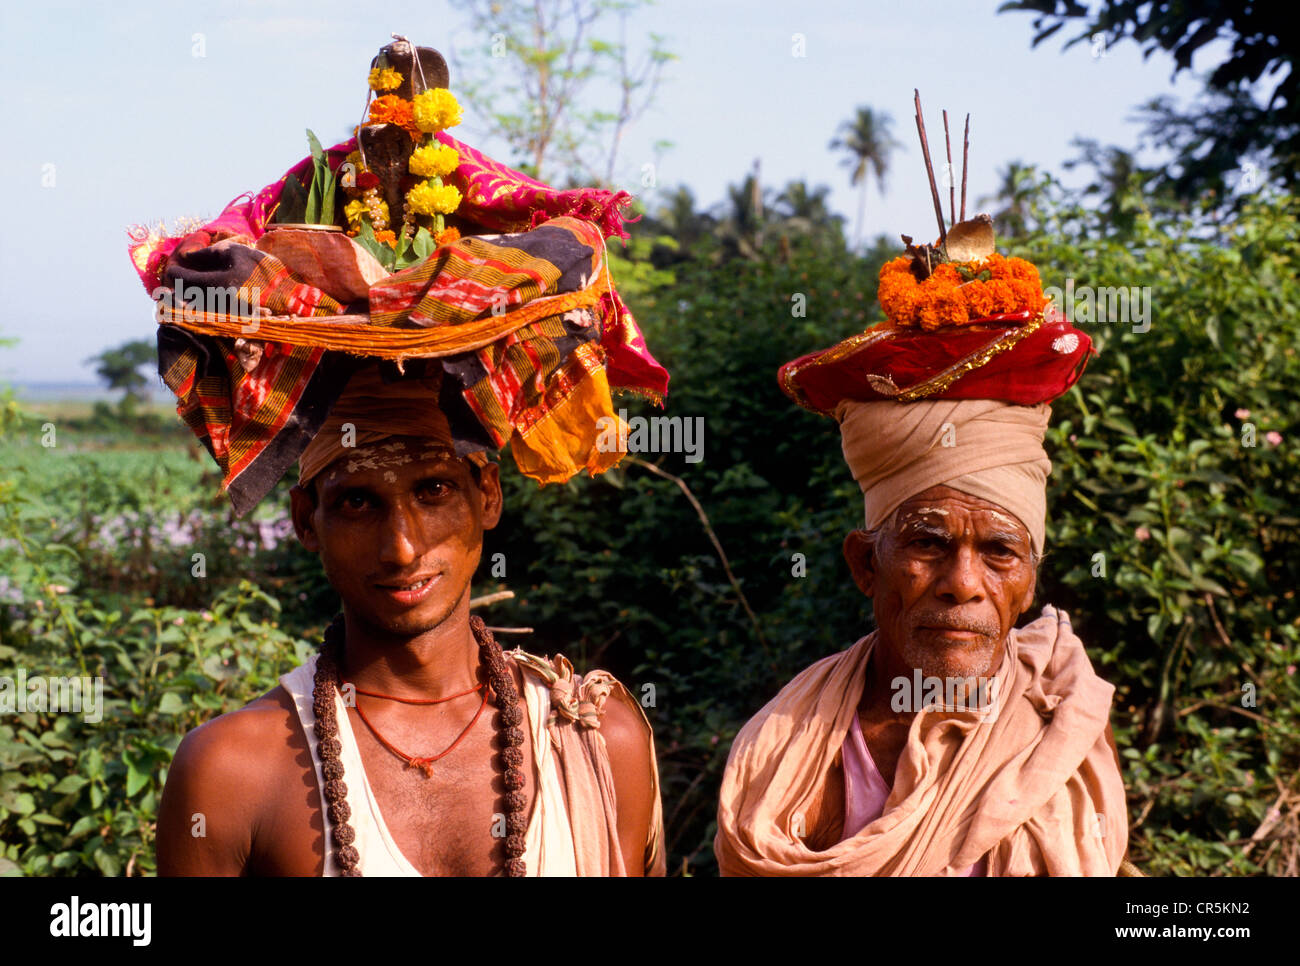 Les prêtres errants pooja offrant à la population locale, Puri, Orissa, Inde, Asie Banque D'Images